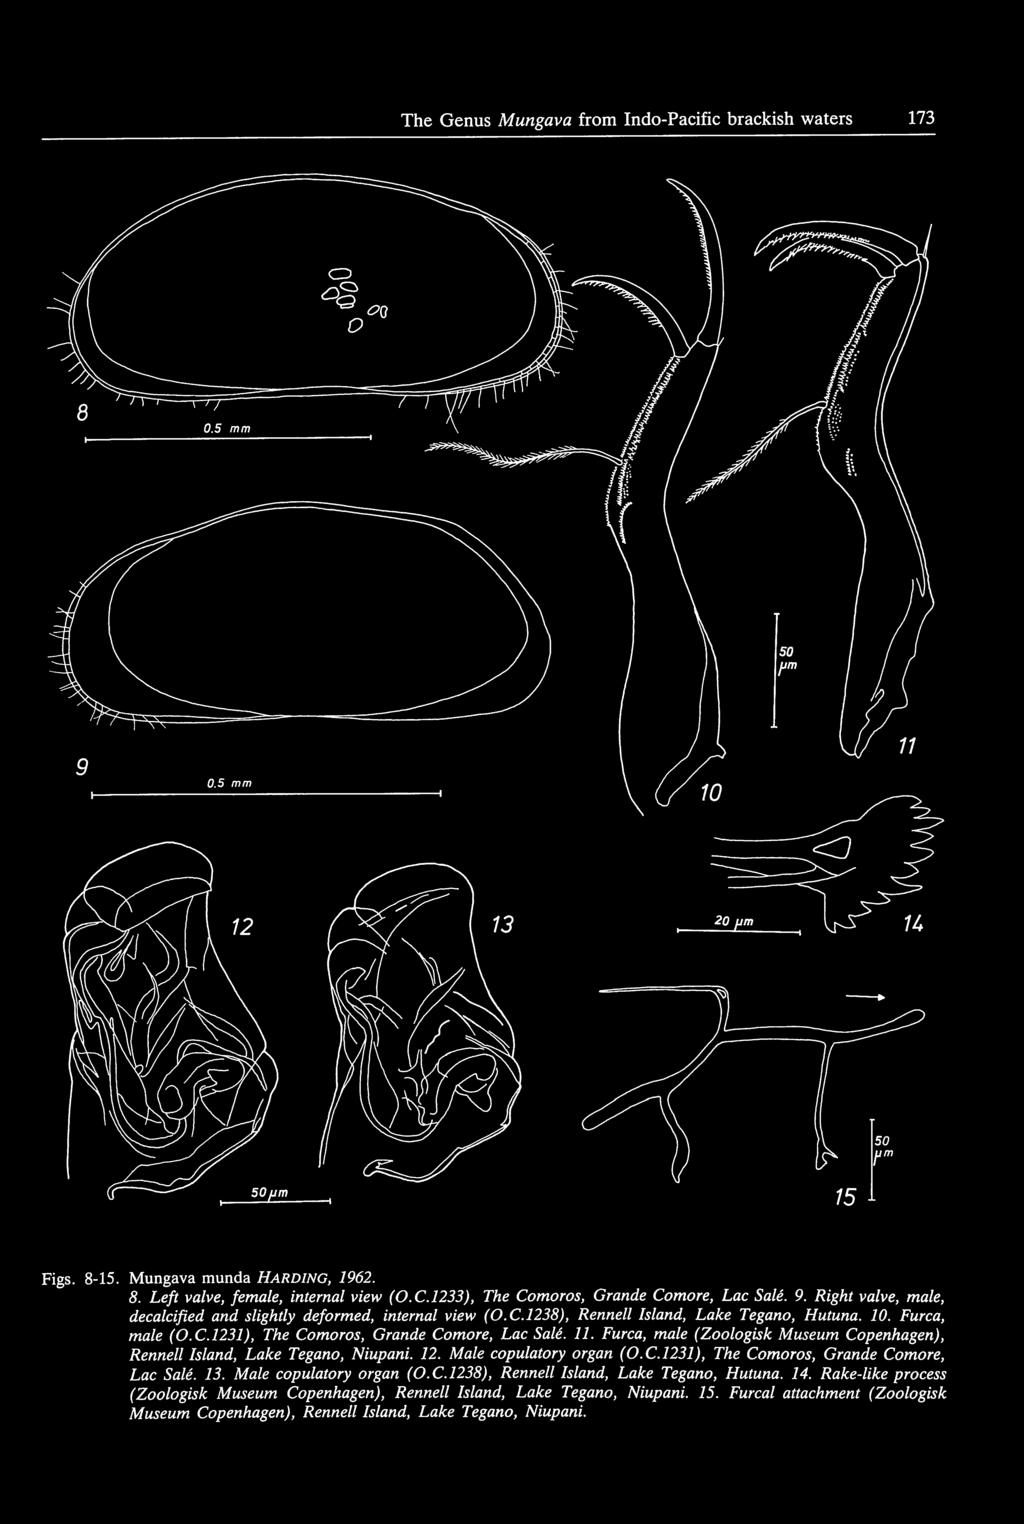 Furca, male (Zoologisk Museum Copenhagen), Rennell Island, Lake Tegano, Niupani. 12. Male copulatory organ (O.C.l231), The Comoros, Grande Comore, Lac Sale. 13. Male copulatory organ (O.C.l238), Rennelllsland, Lake Tegano, Hutuna.